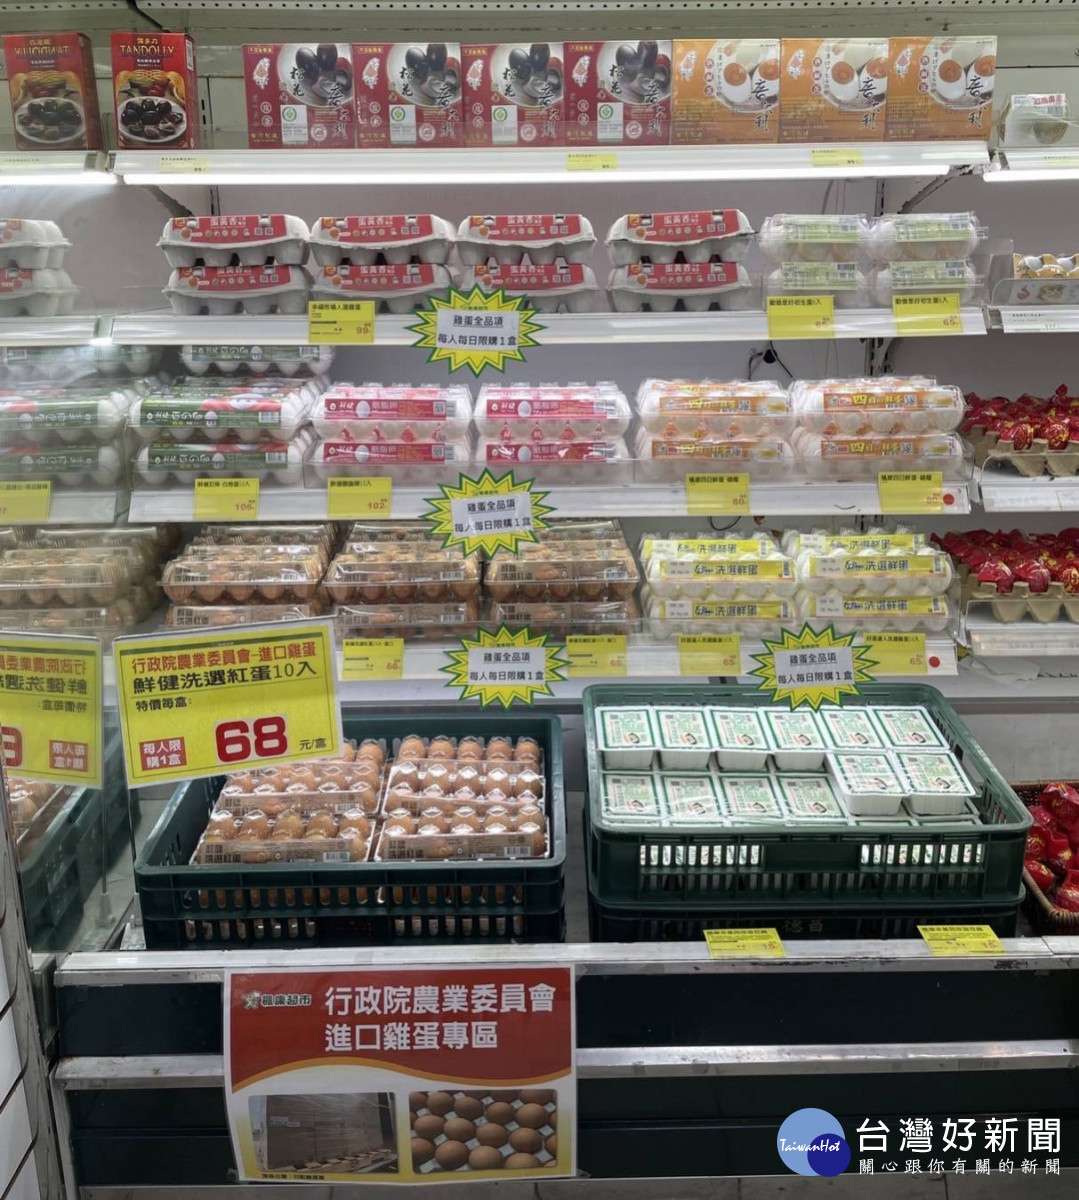 楓康超市拿到農委會配送的進口雞蛋，開心通知超市會員前往選購。楓康超市提供